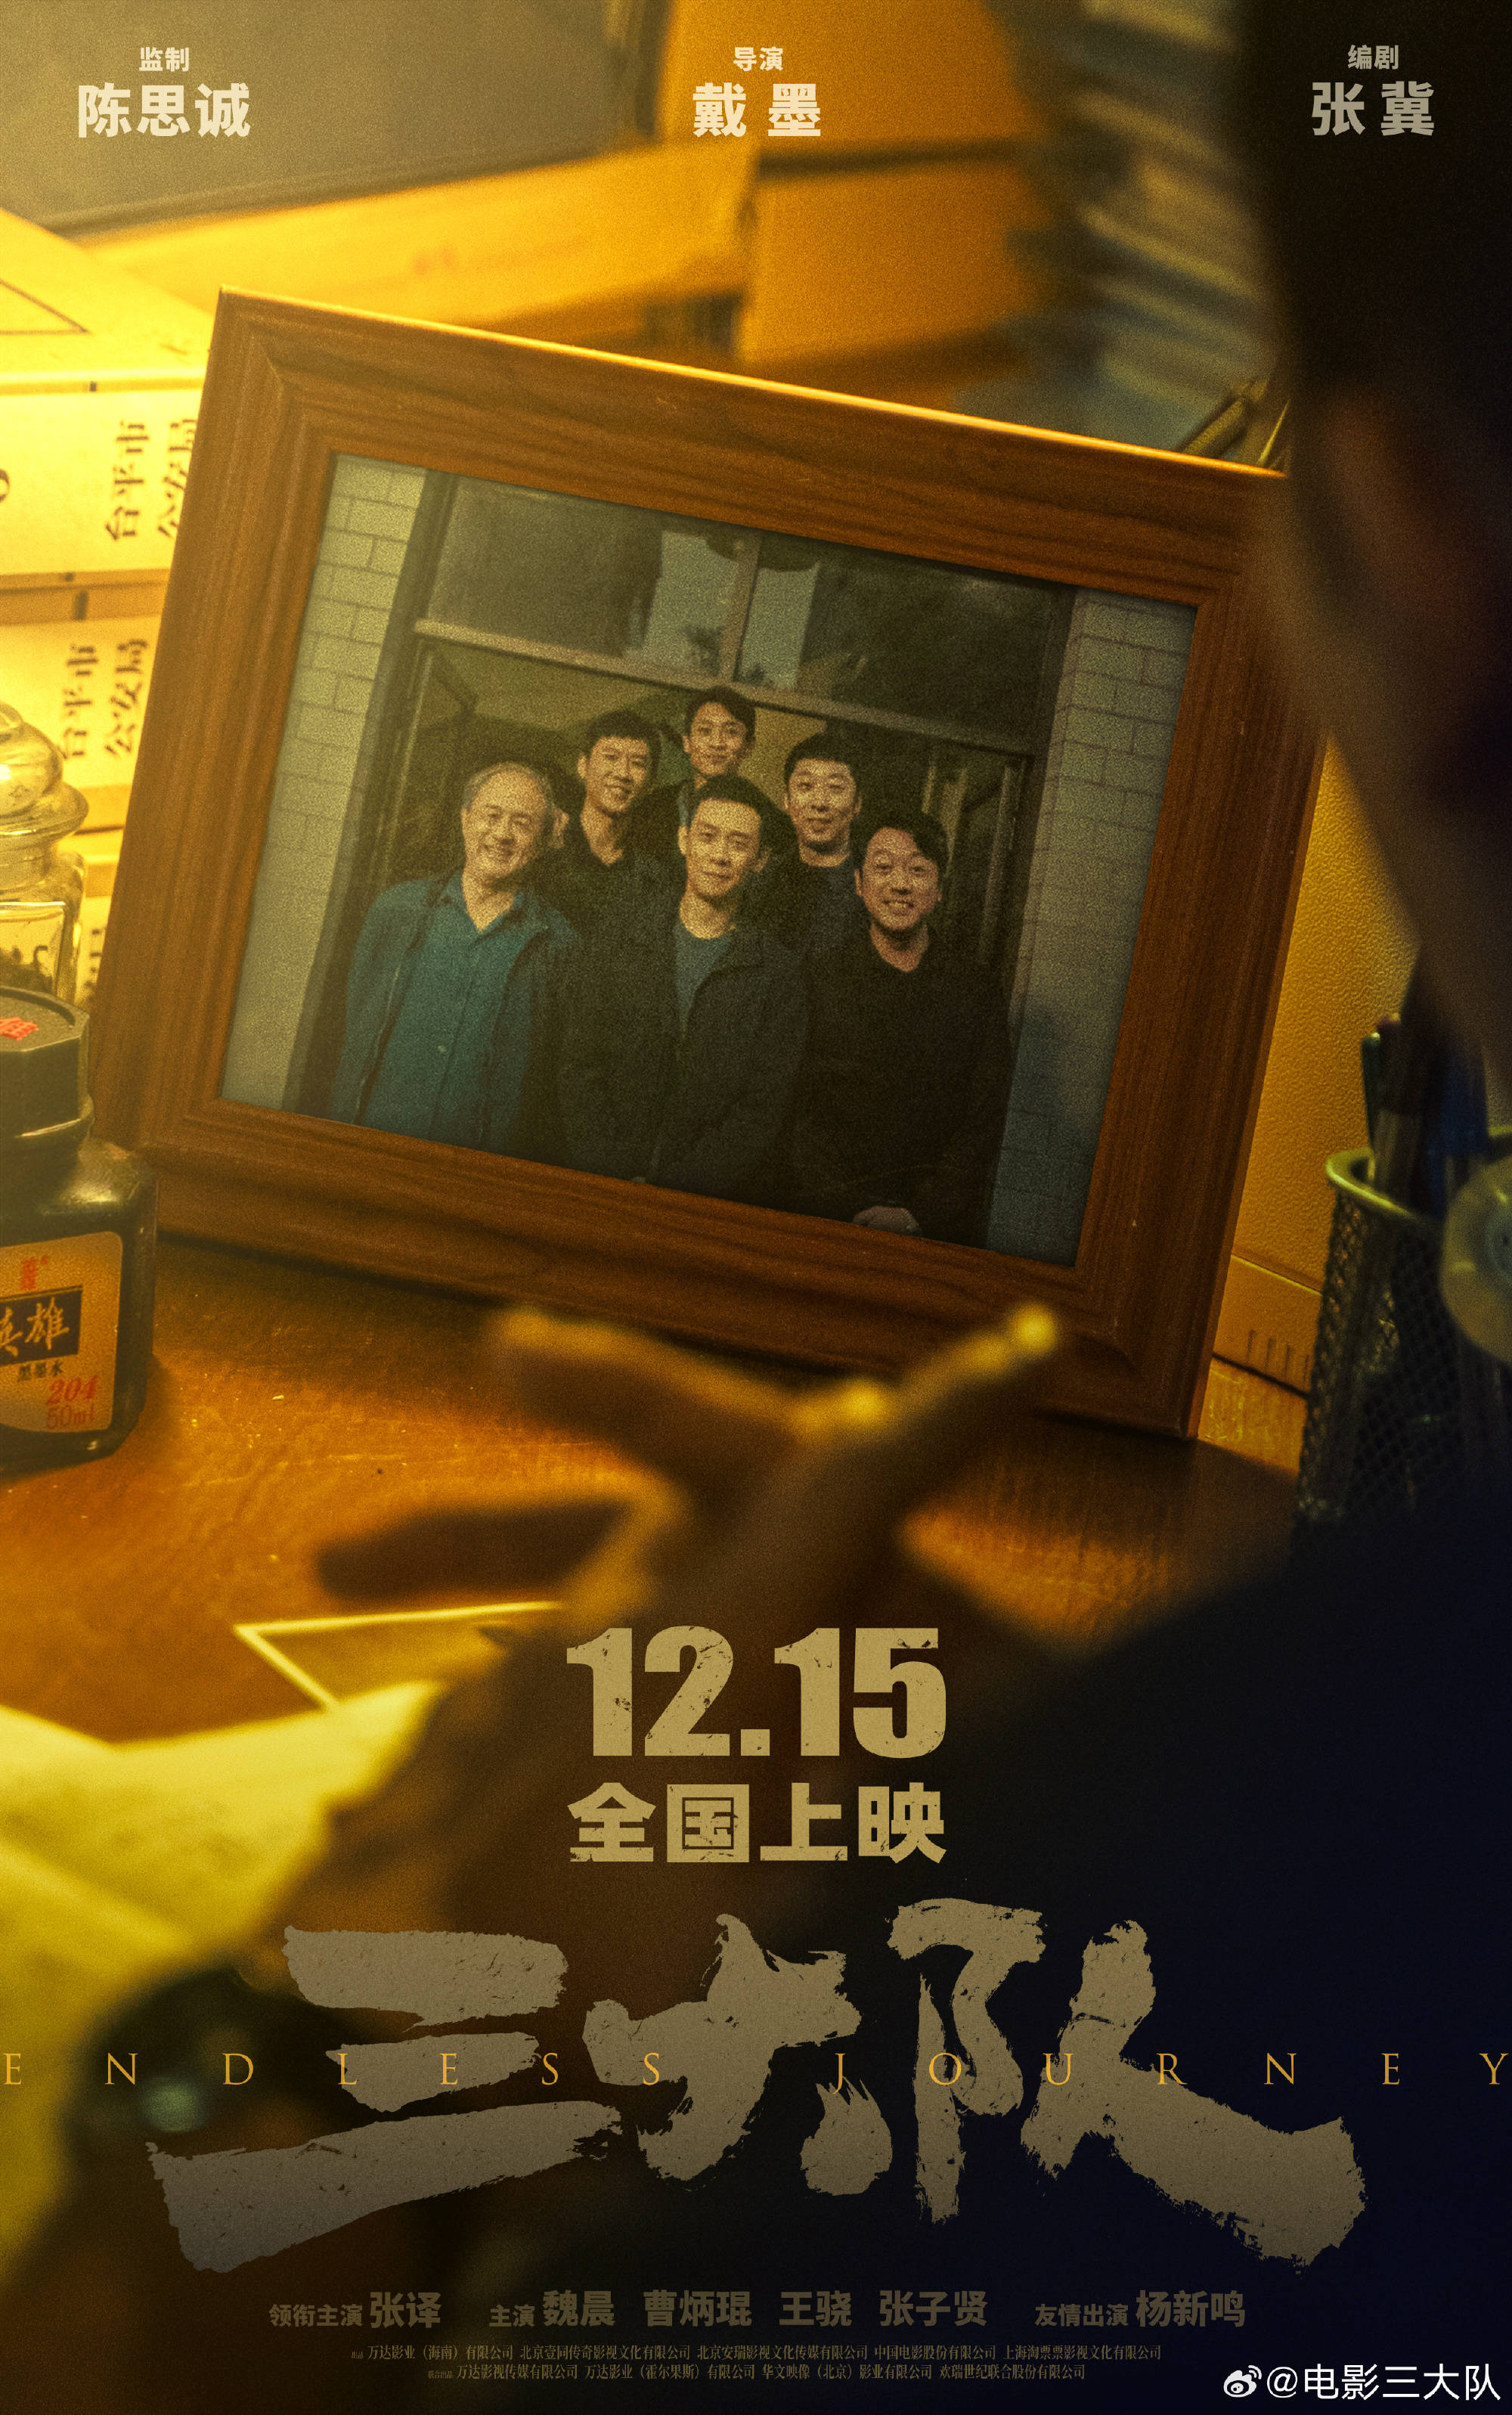 《三大队》电影发布“执念不灭”预告